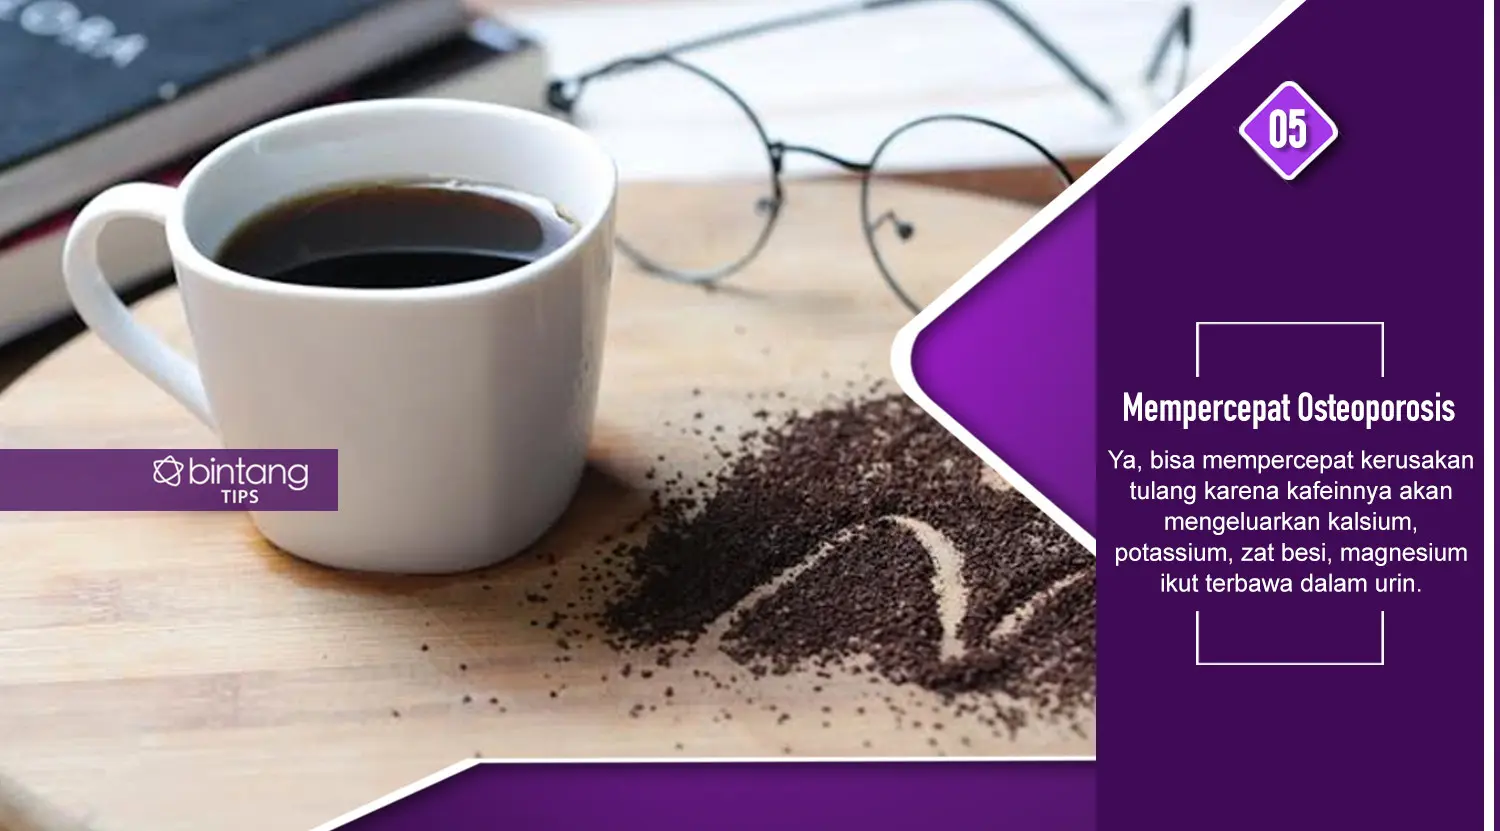 Ini yang harus diketahui cewek penggemar kopi. (Foto: Deki Prayoga, Digital Imaging: M. Iqbal Nurfajri/Bintang.com)